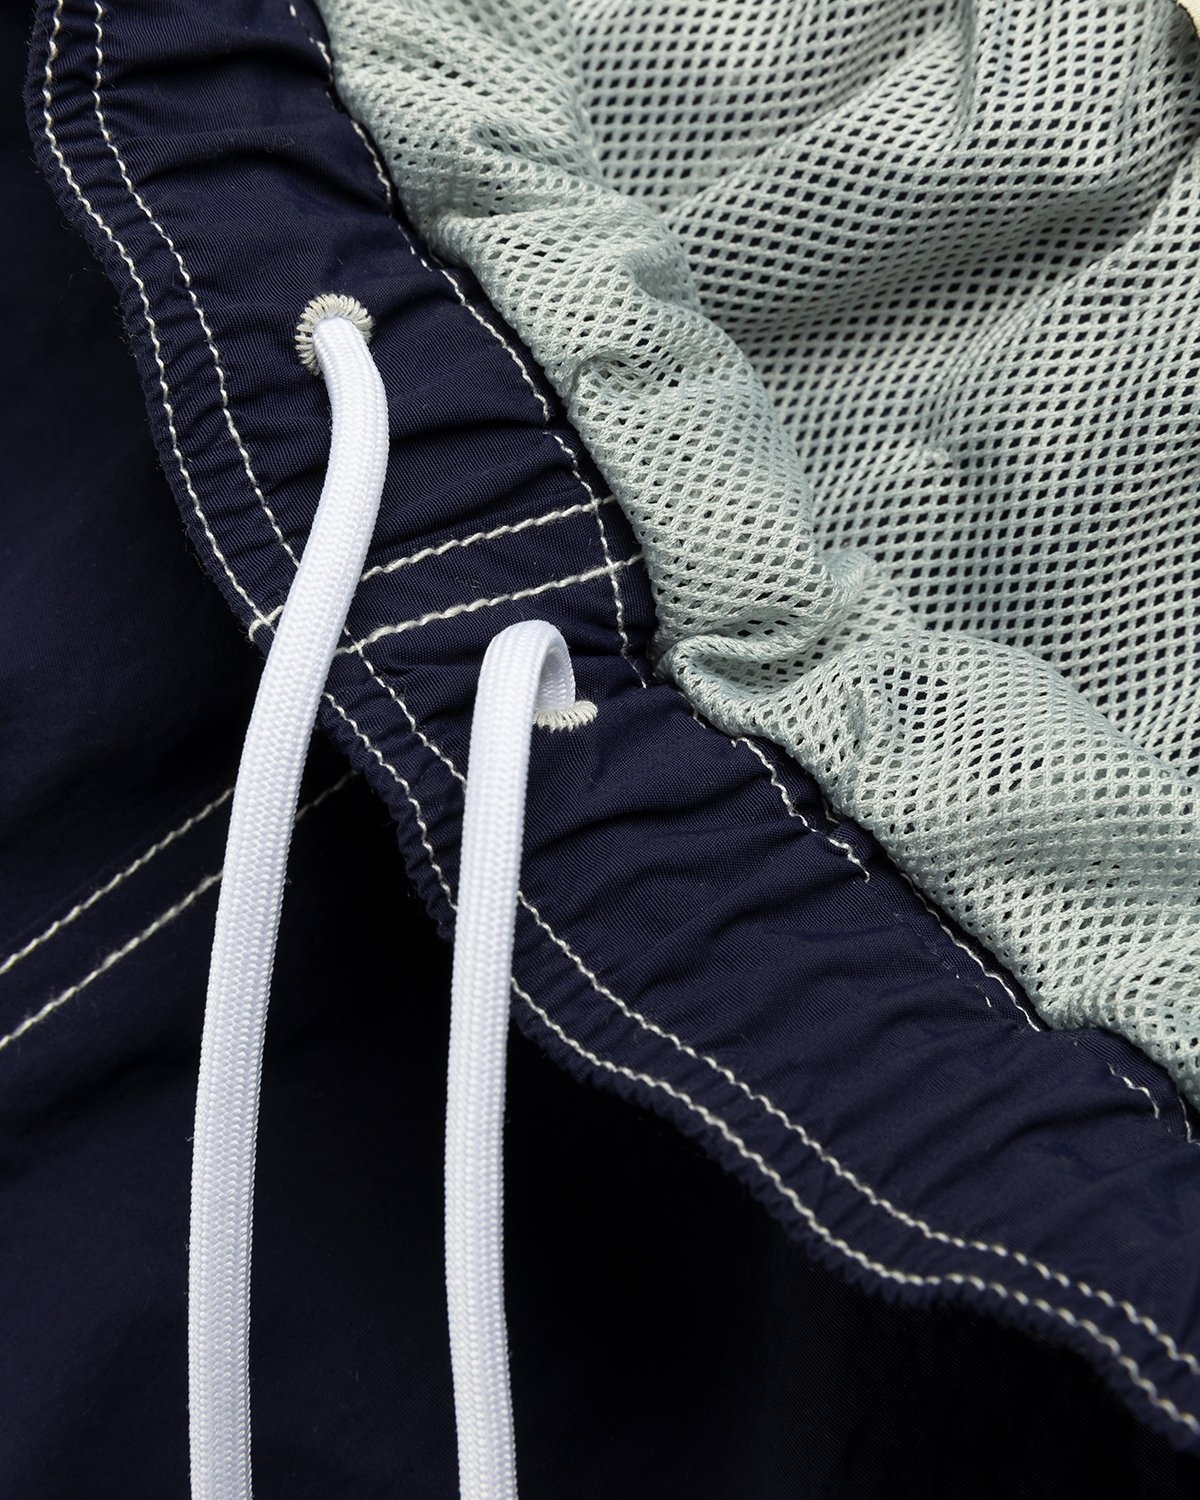 Highsnobiety – Contrast Brushed Nylon Water Shorts Navy - Shorts - Blue - Image 5